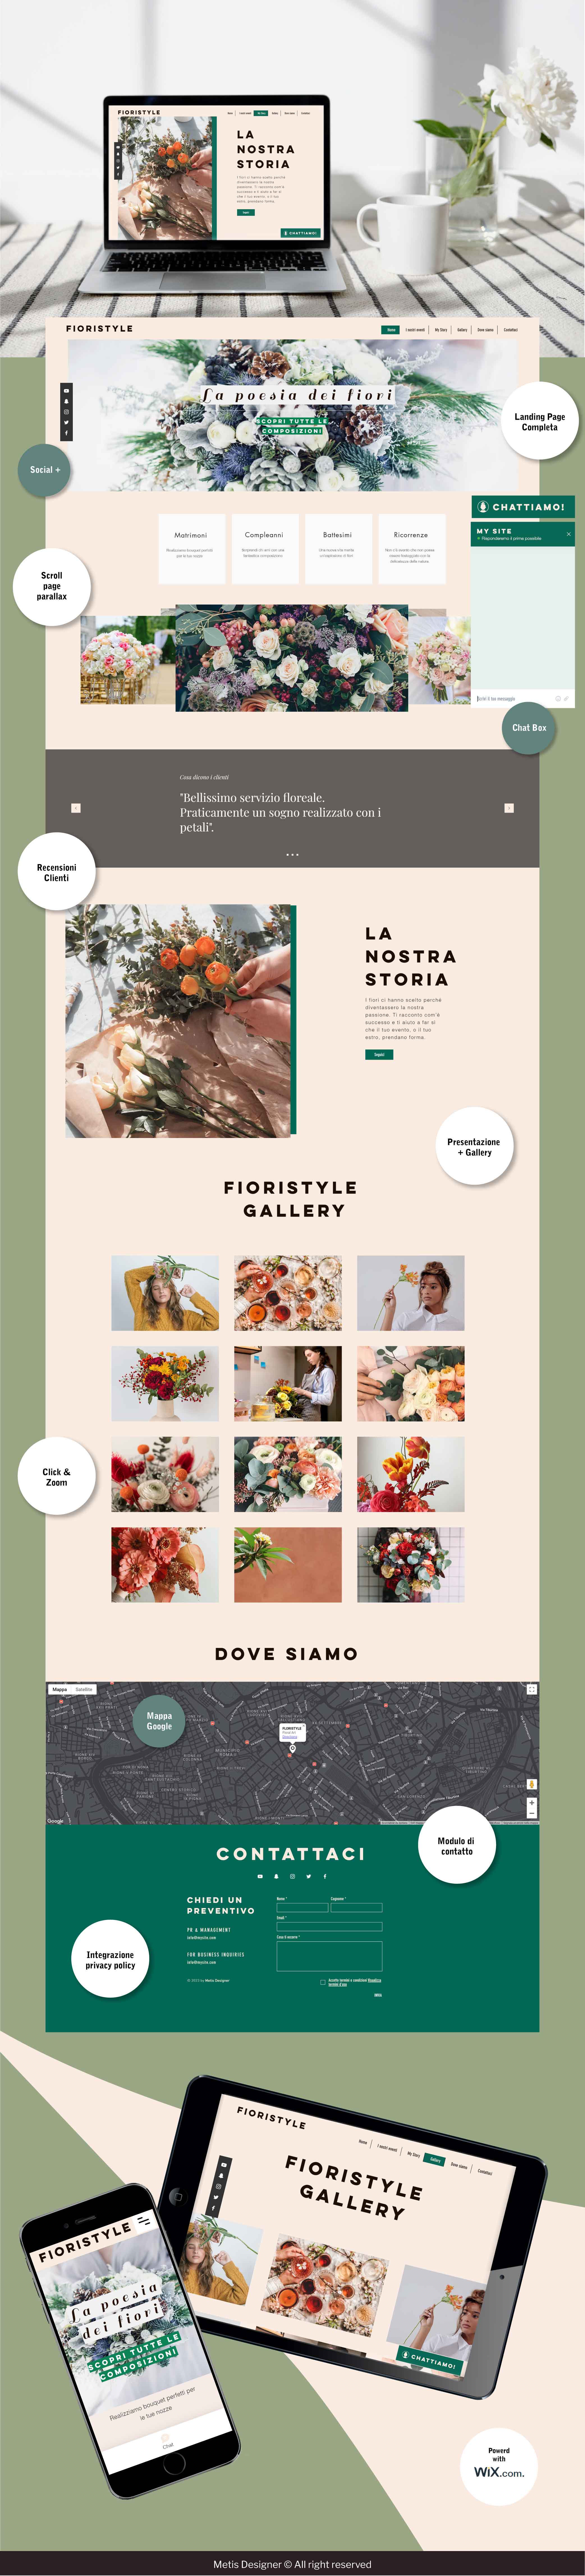 presentazione-sito-fioristyle